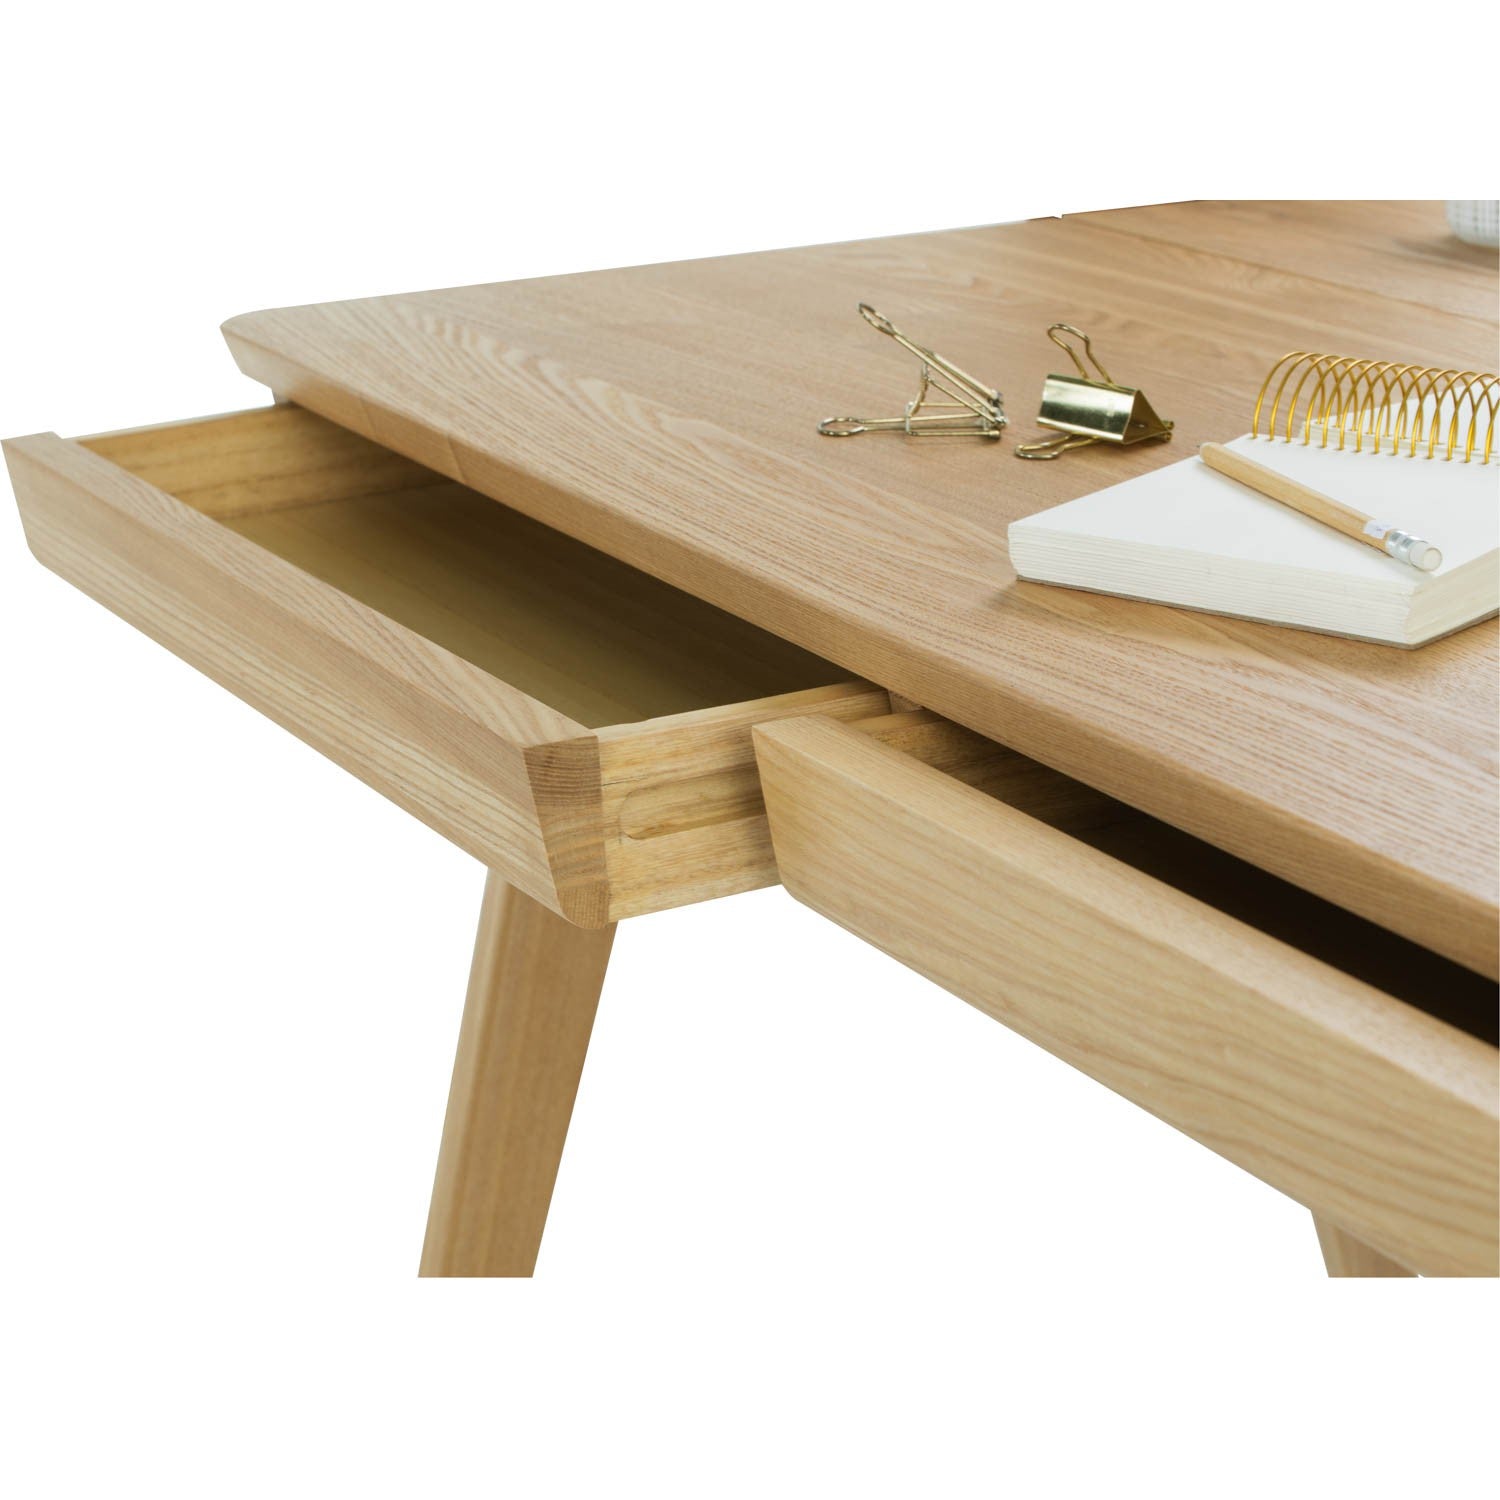 馬來西亞原裝進口實木傢俬 - LU系列 - KEIR書桌